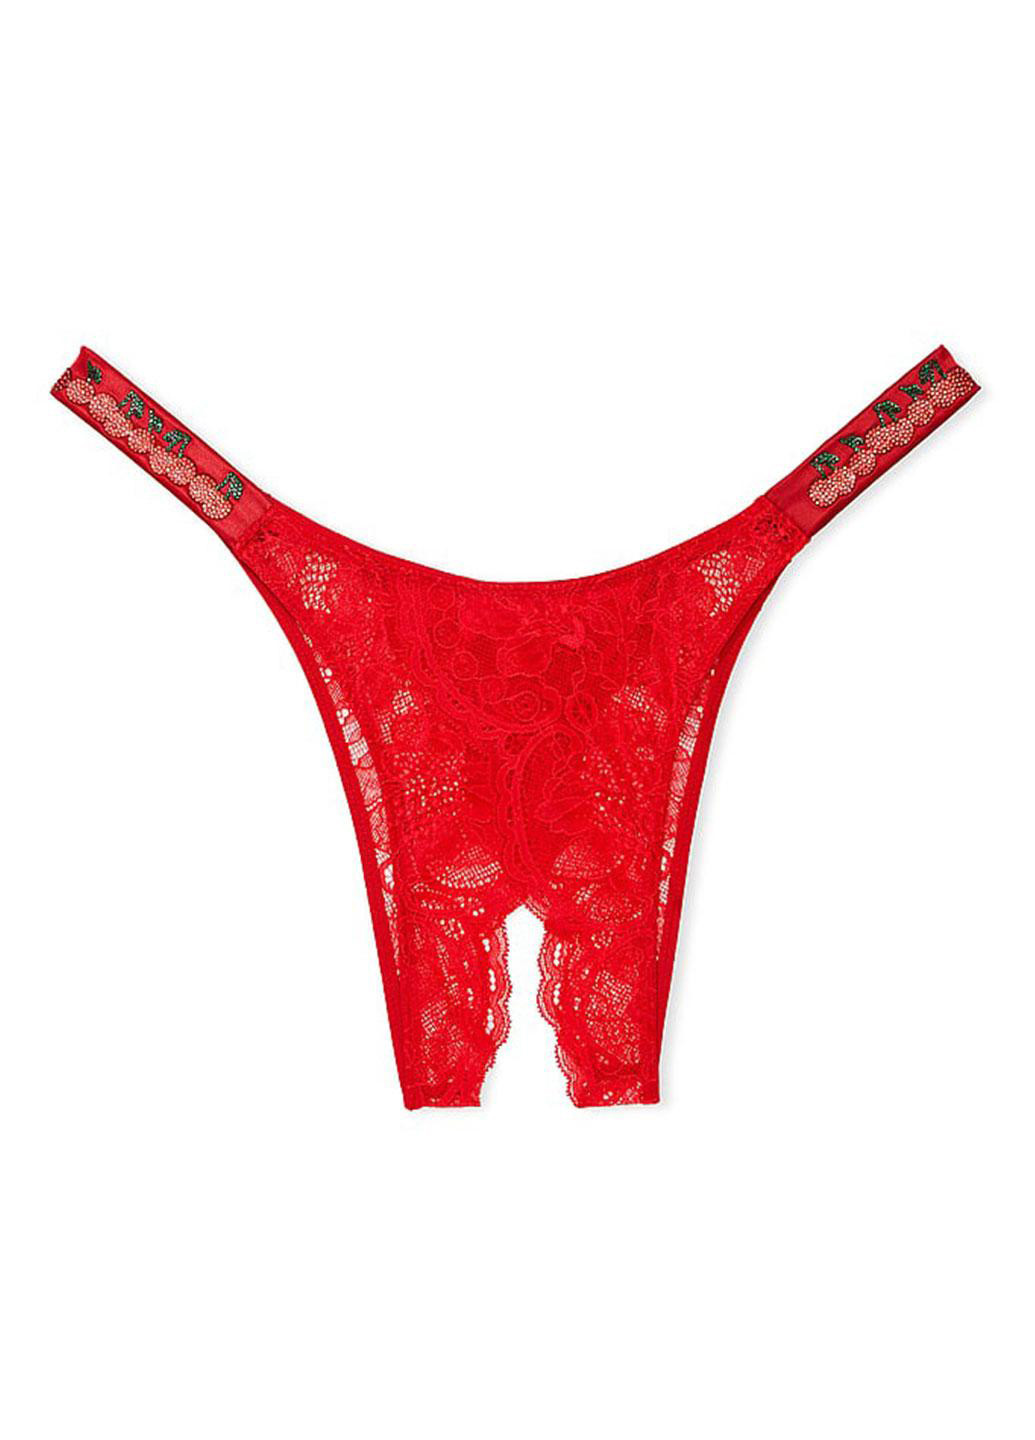 Червоний демісезонний комплект (бюстгальтер, трусики, пояс для панчіх) Victoria's Secret